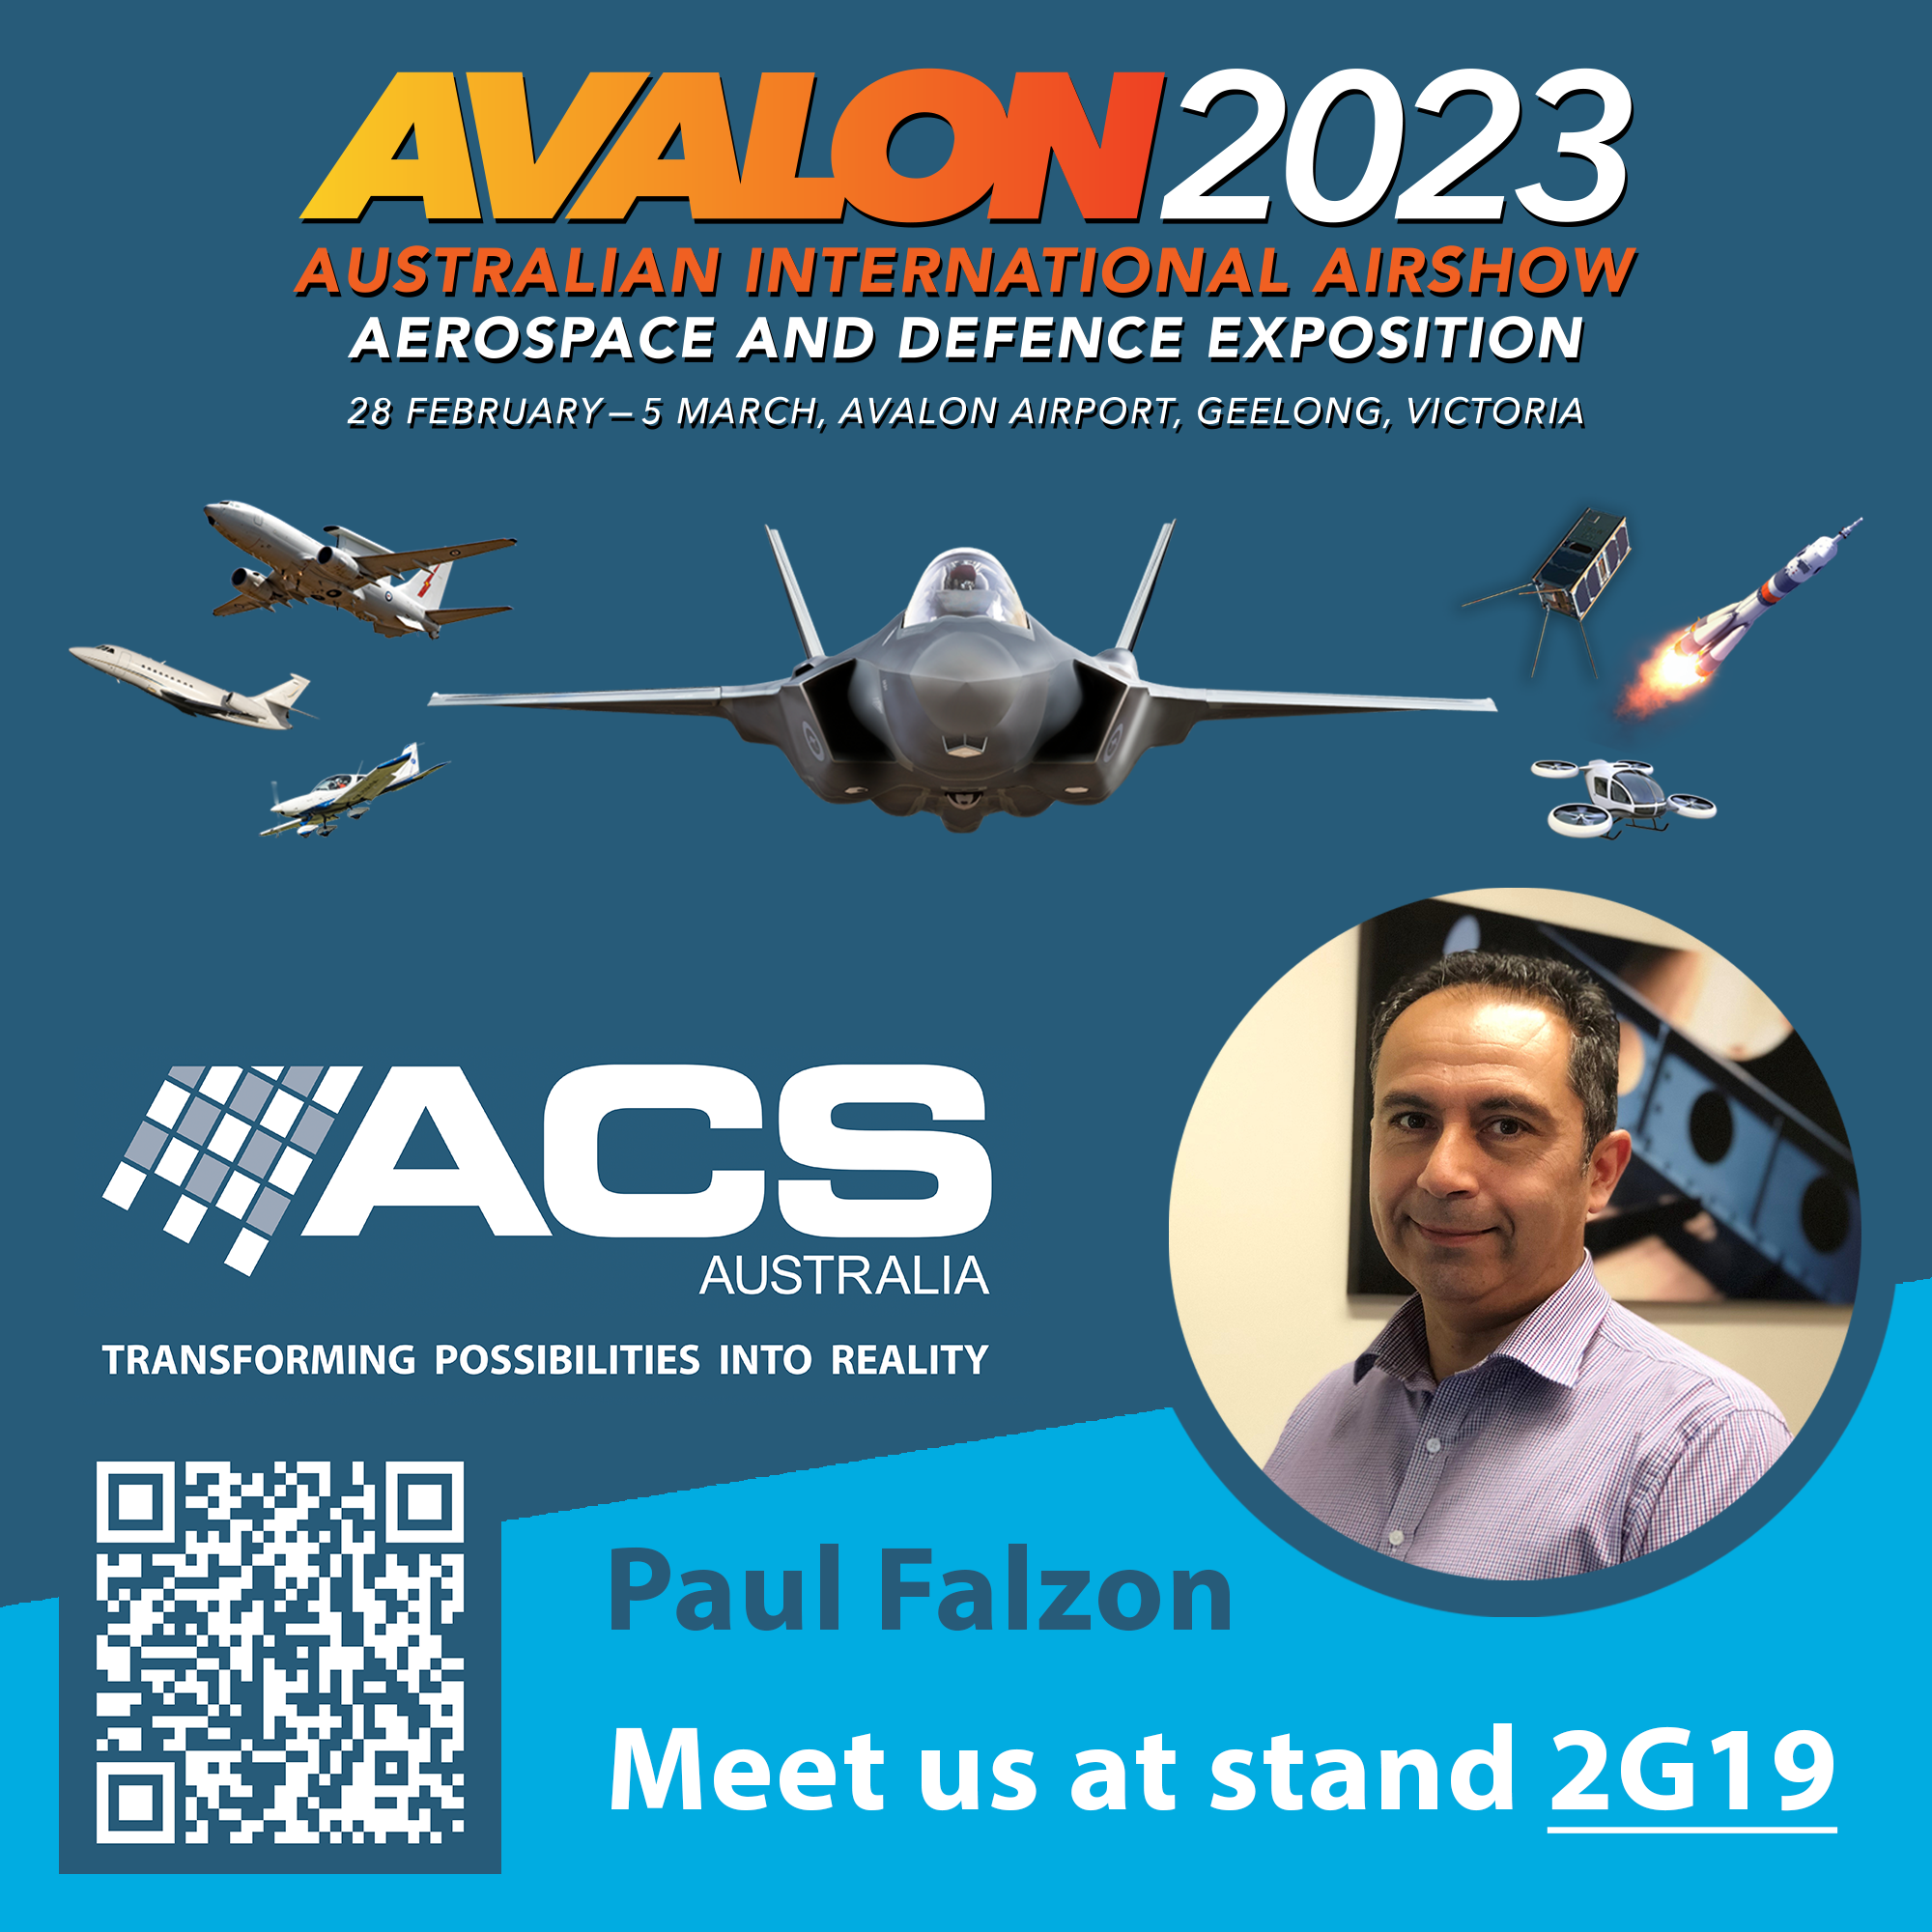 Avalon-Airshow-2023-Paul-Falzon-Advanced-Composite-Structures-Australia